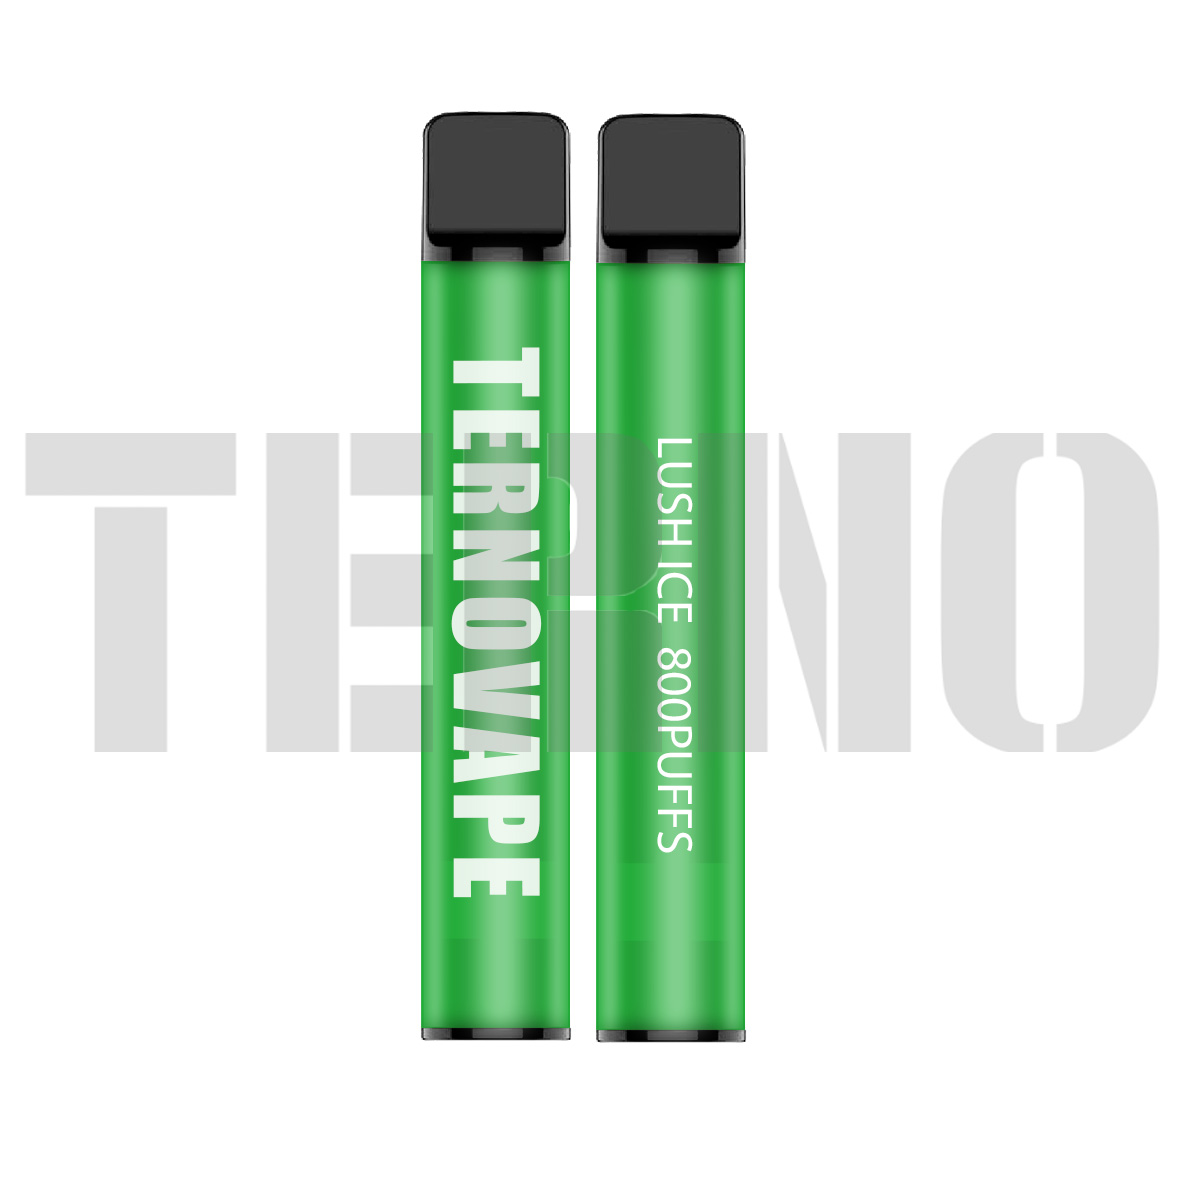 Terno YT800 disposable vape kit 800puffs - 3 